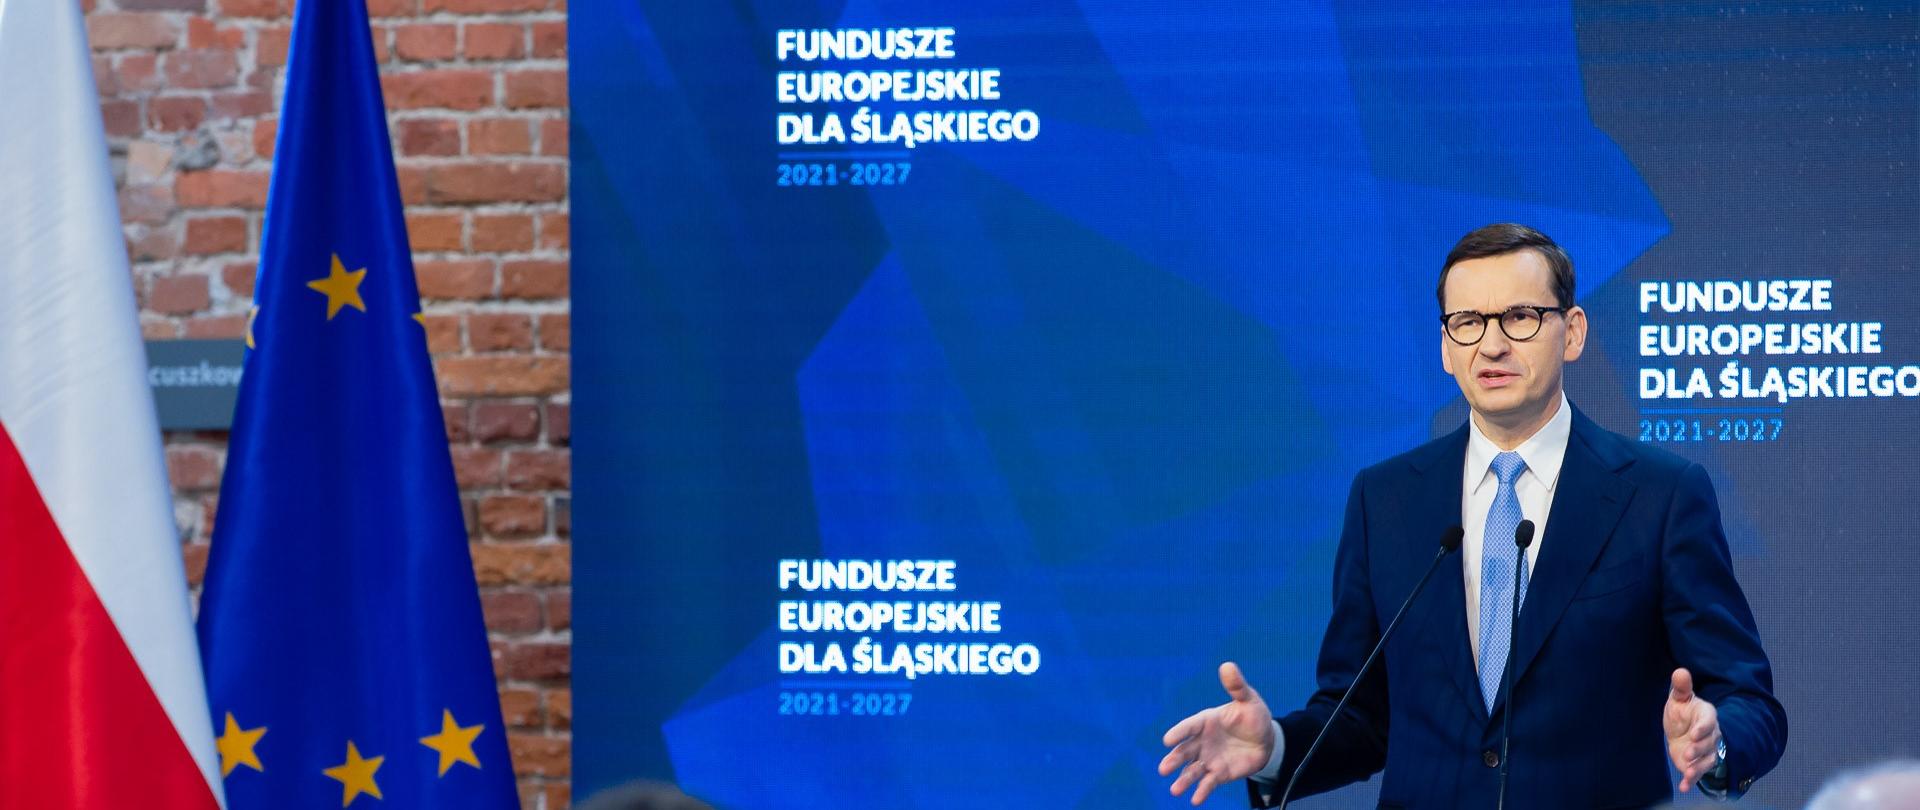 Premier Mateusz Morawiecki podczas spotkania "Fundusze Europejskie dla Śląska" w Zabrzu.